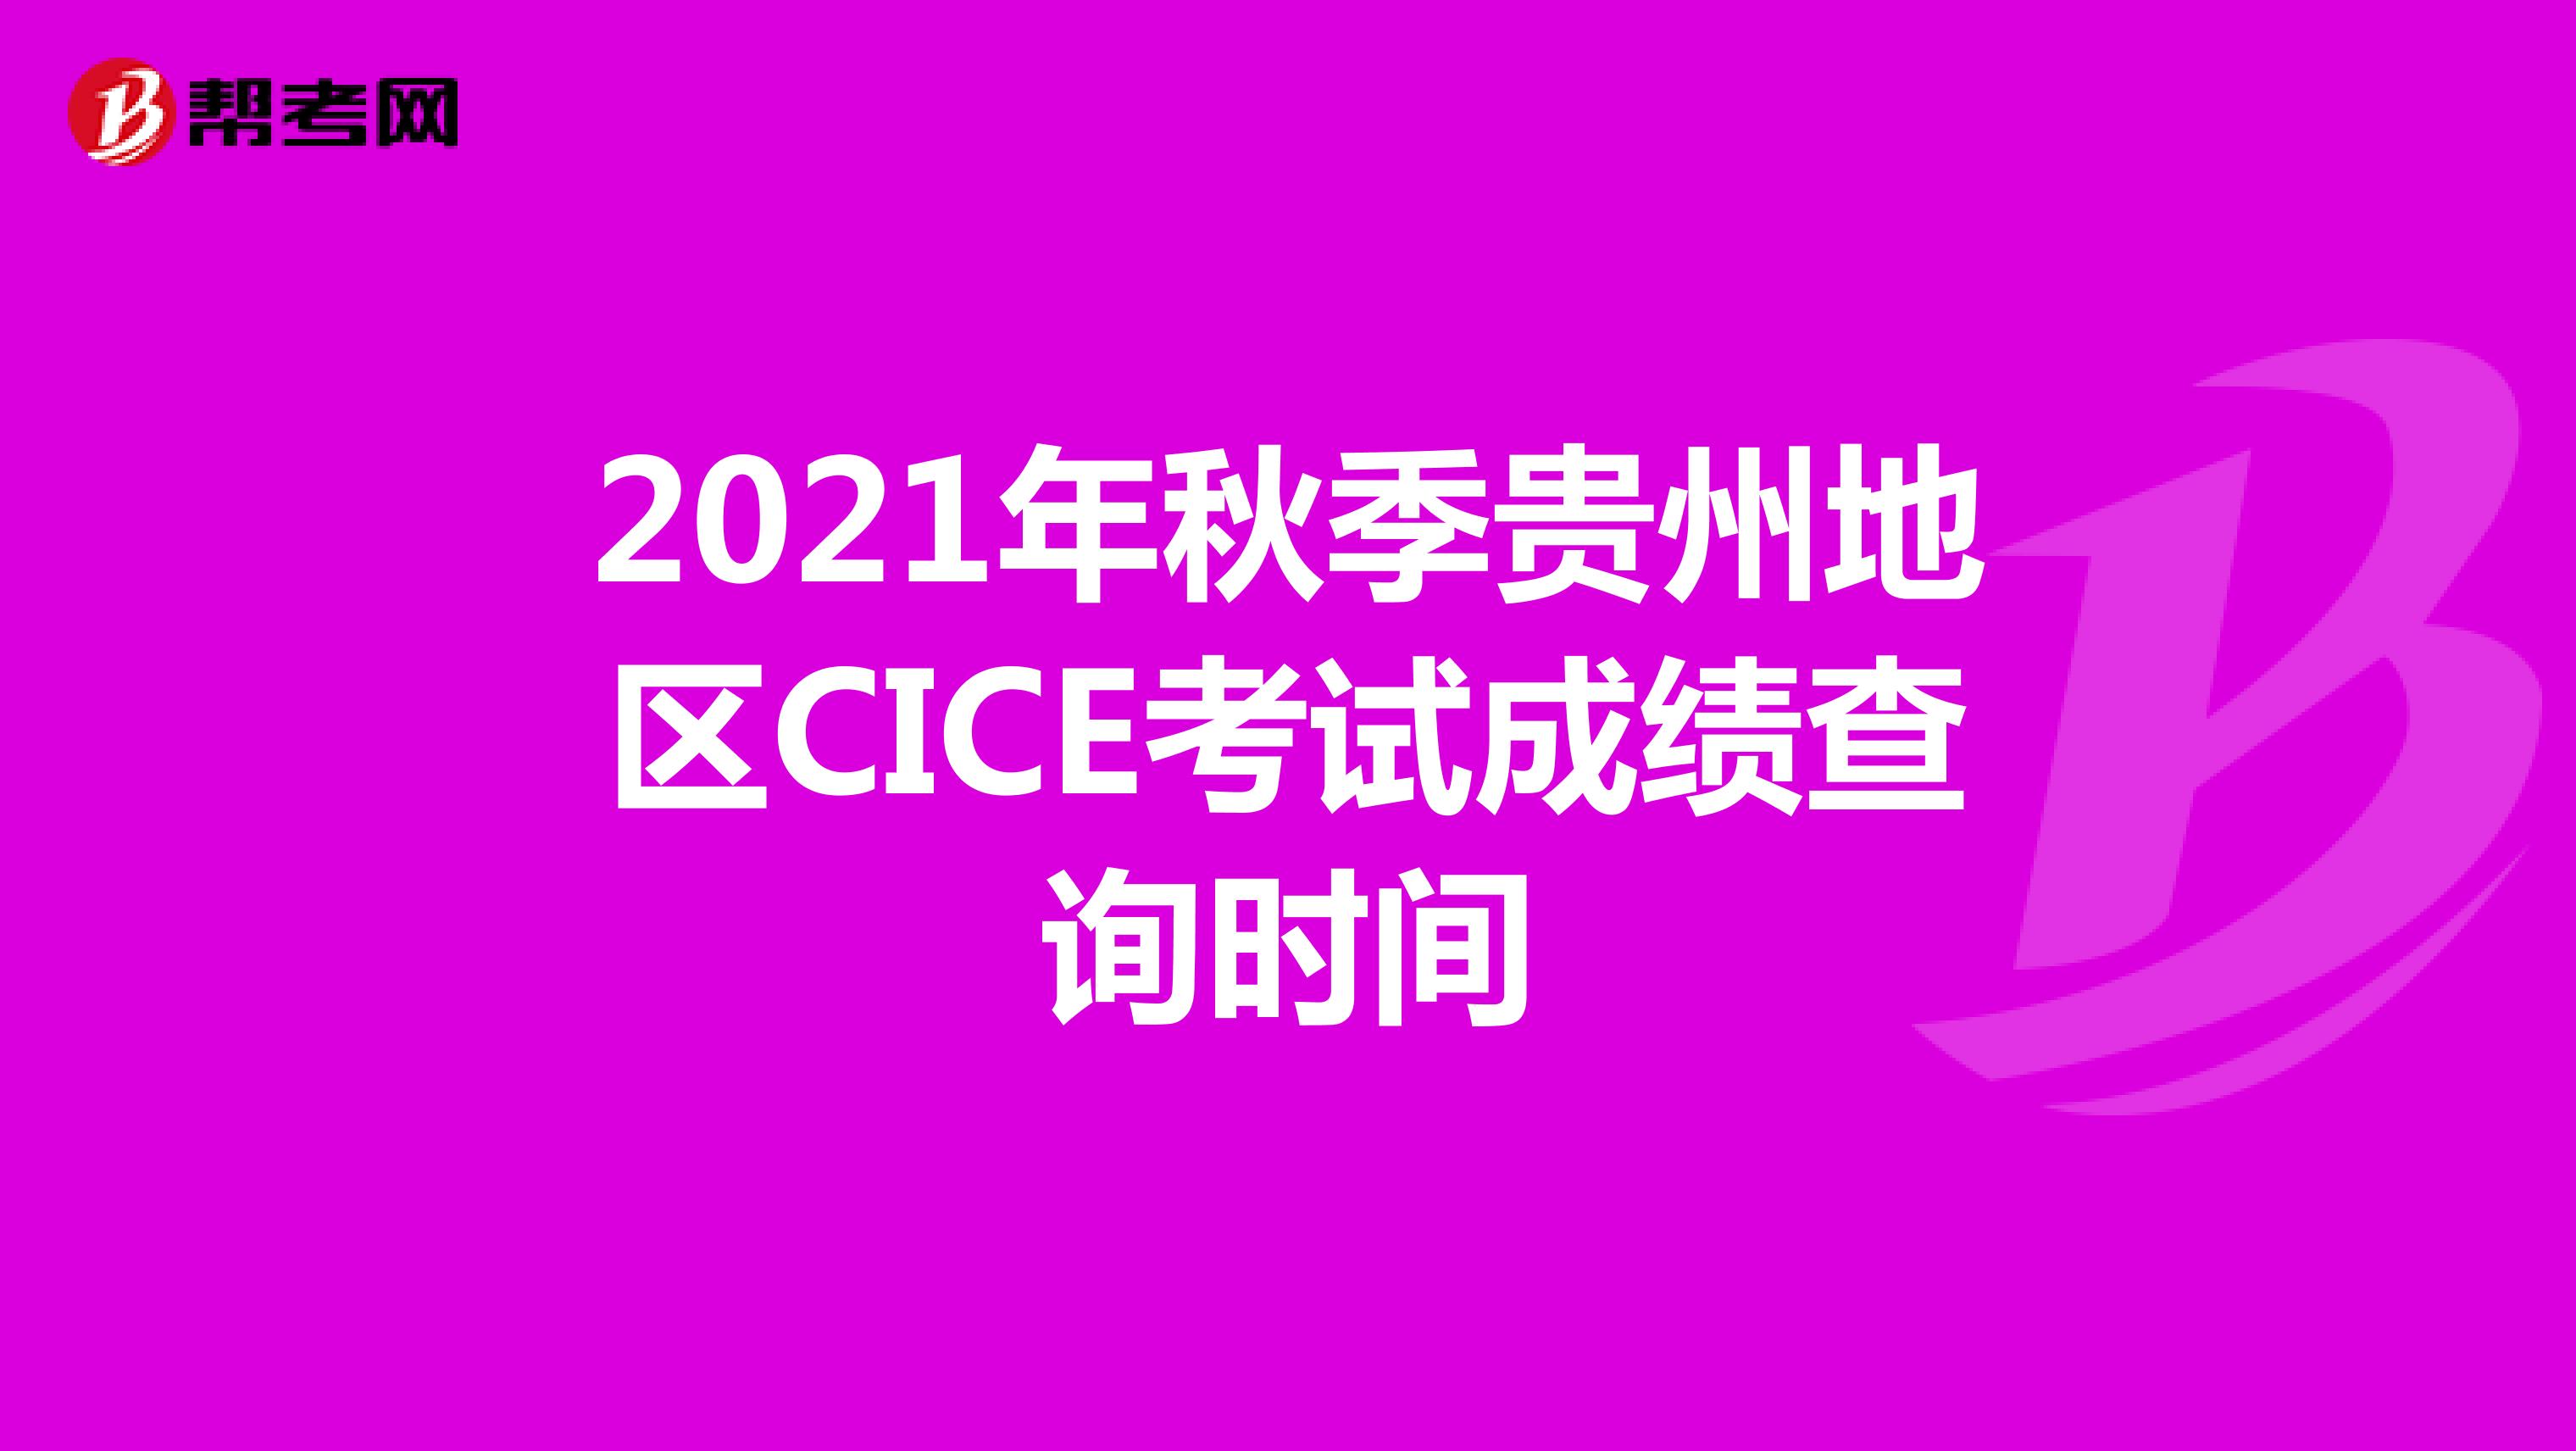 2021年秋季贵州地区CICE考试成绩查询时间